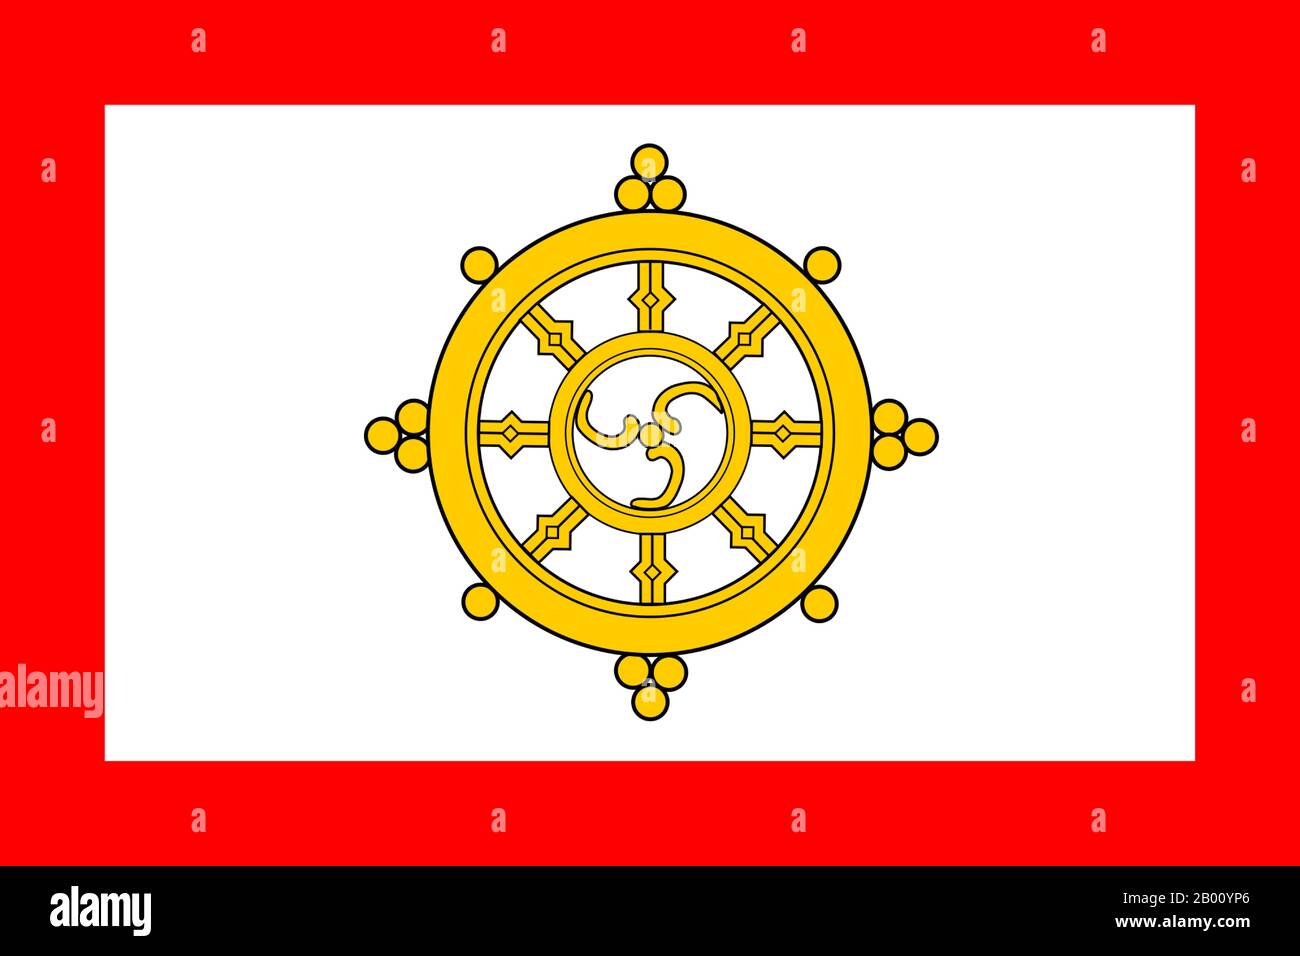 India/Sikkim: Bandiera della ruota di preghiera buddista dell'ex monarchia di Sikkim (1967-1975). La bandiera nazionale di Sikkim consisteva in una ruota di preghiera khorlo buddista con il gankyil come elemento centrale. Fino al 1967, la bandiera precedente mostrava un design molto complesso con un bordo fantasioso e pittogrammi religiosi che circondano il khorlo. Un progetto più semplice è stato adottato nel 1967 a causa della difficoltà di duplicazione della bandiera complessa. Il bordo è diventato rosso fisso, i pittogrammi sono stati rimossi e la ruota è stata riprogettata. Con l'annessione del Sikkim all'India, la monarchia e la bandiera sono state abolite. Foto Stock